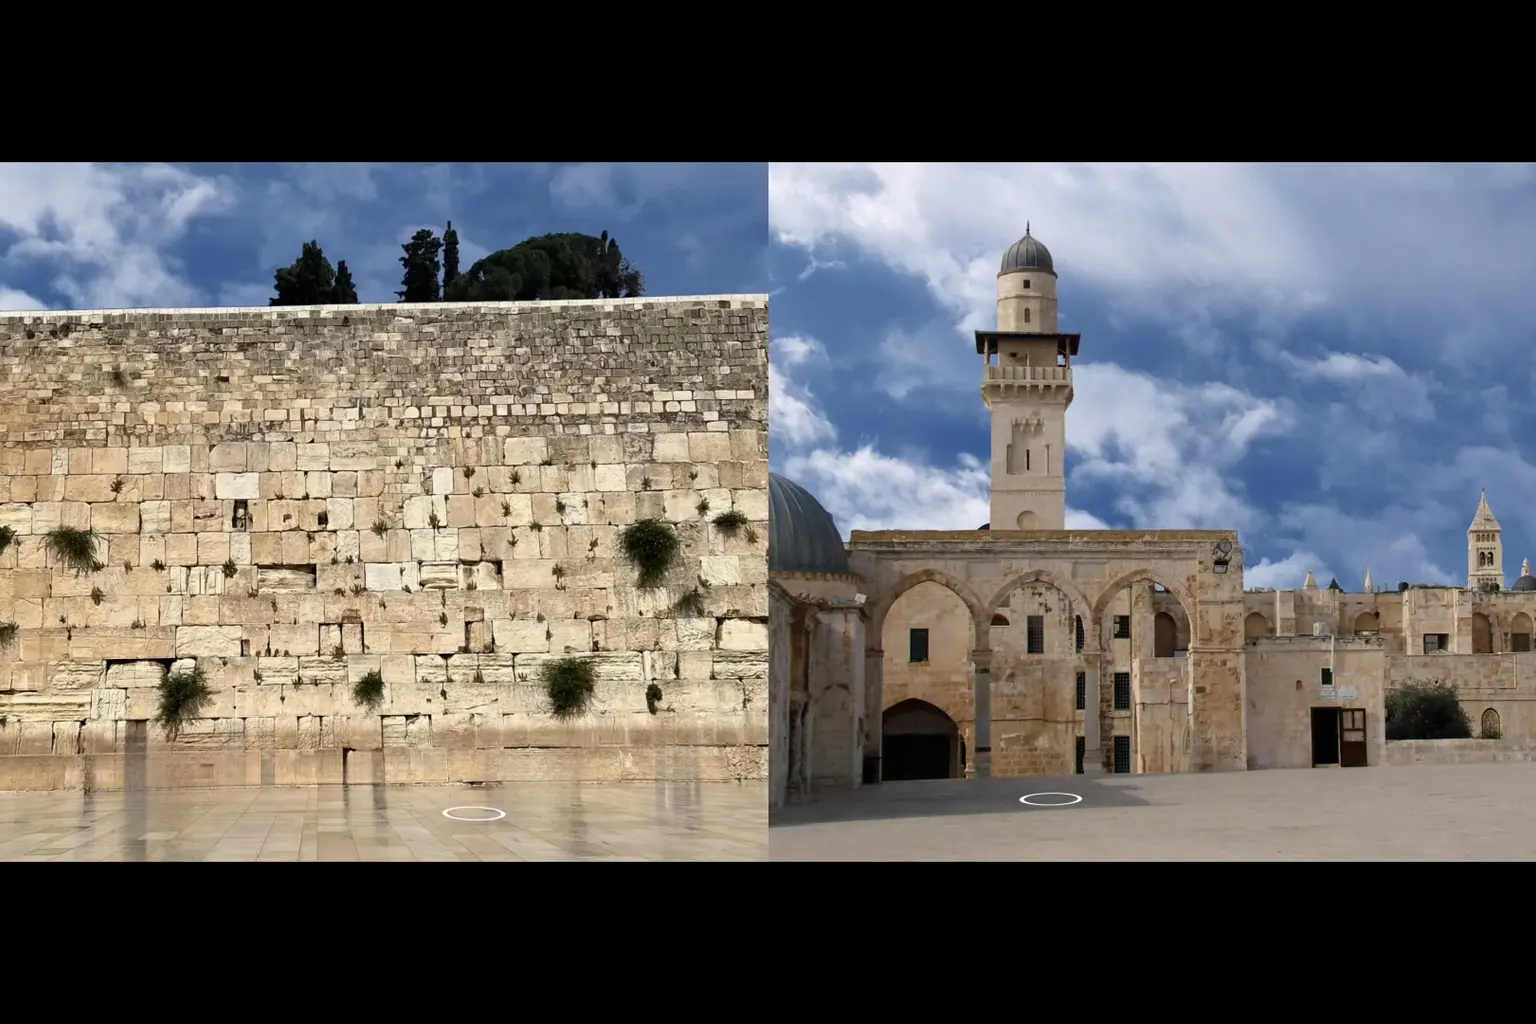 Nei cerchi bianchi il posizionamento delle sculture invisibili a Gerusalemme (foto concessa)